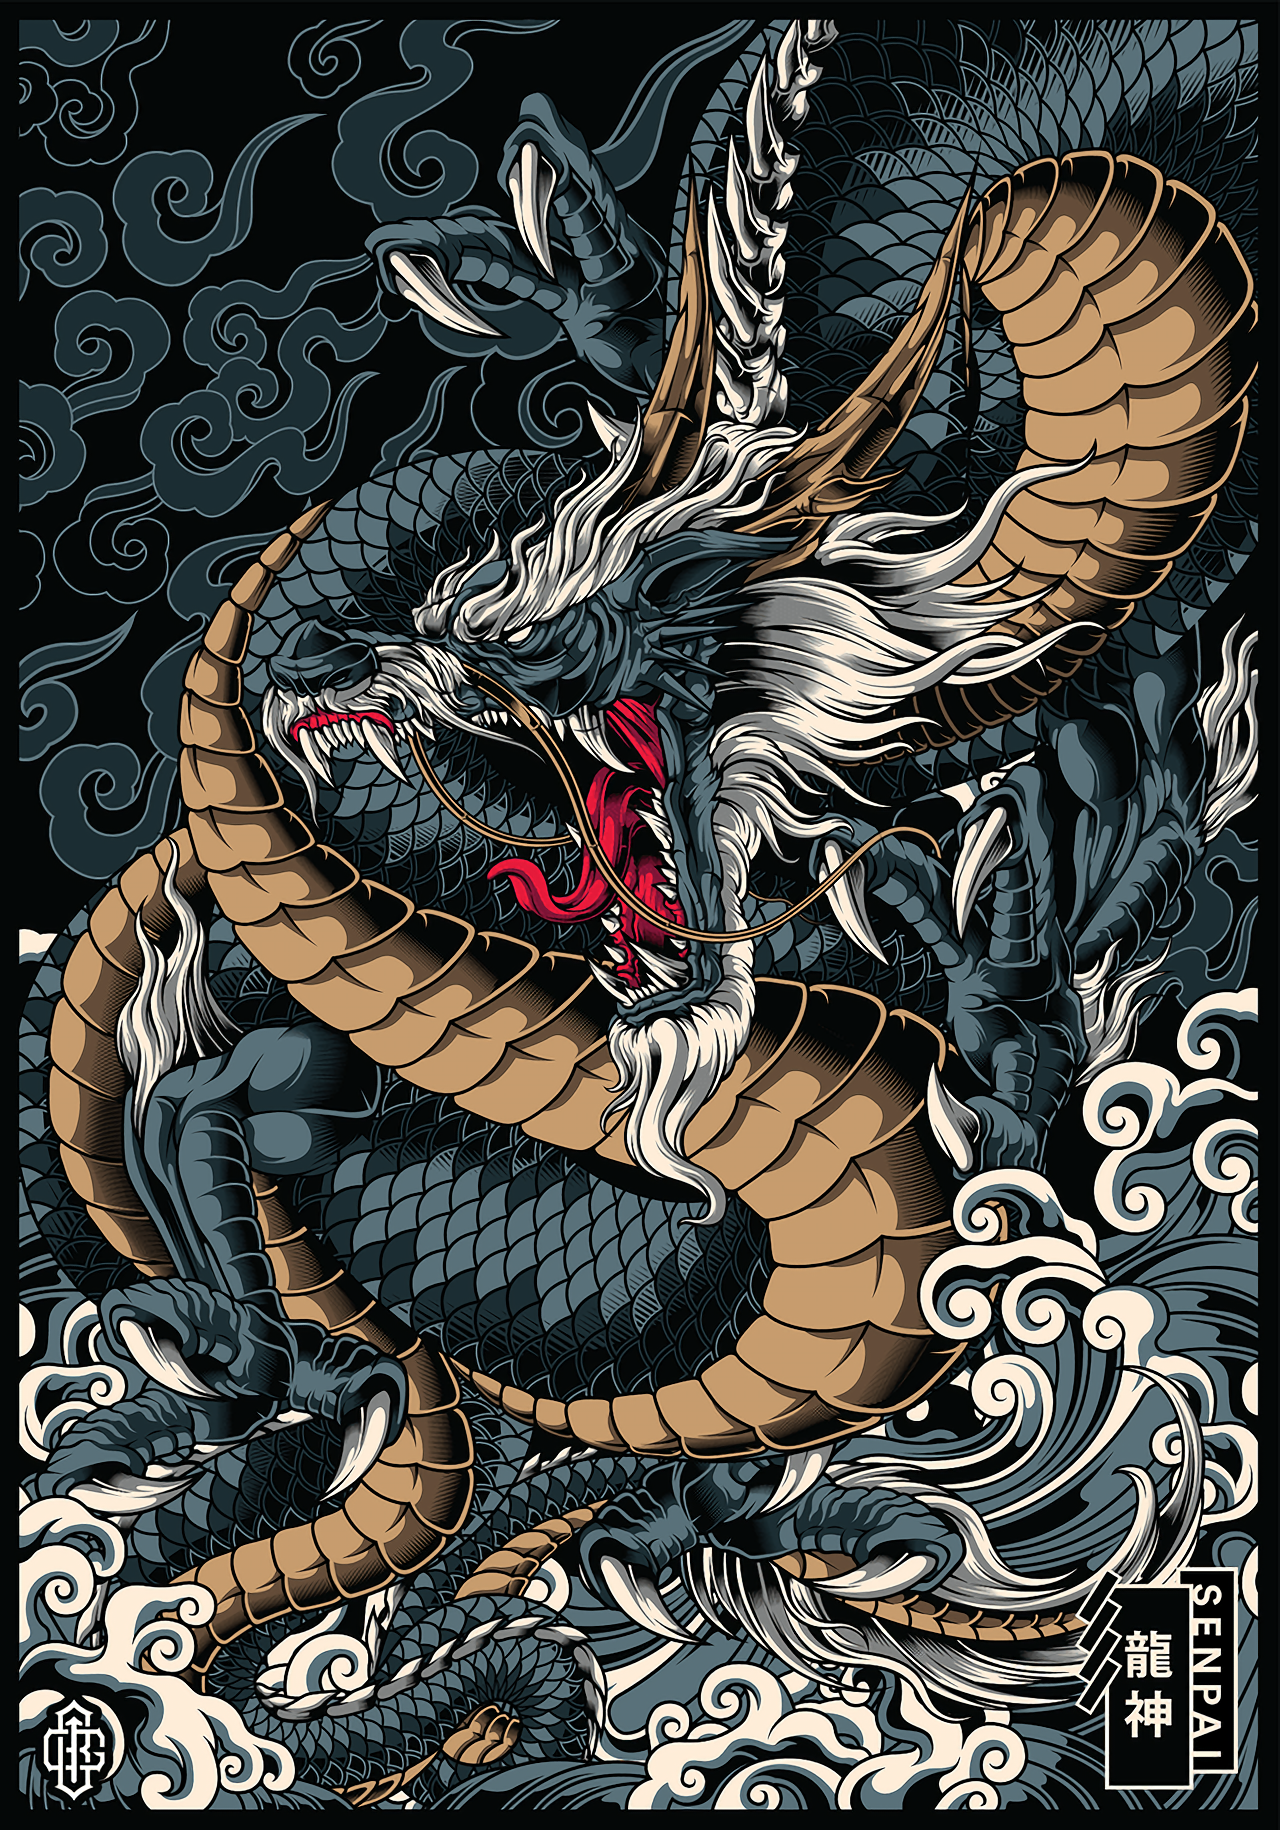 Approaching Dragon Wallpaper by KJacksonKatss on DeviantArt